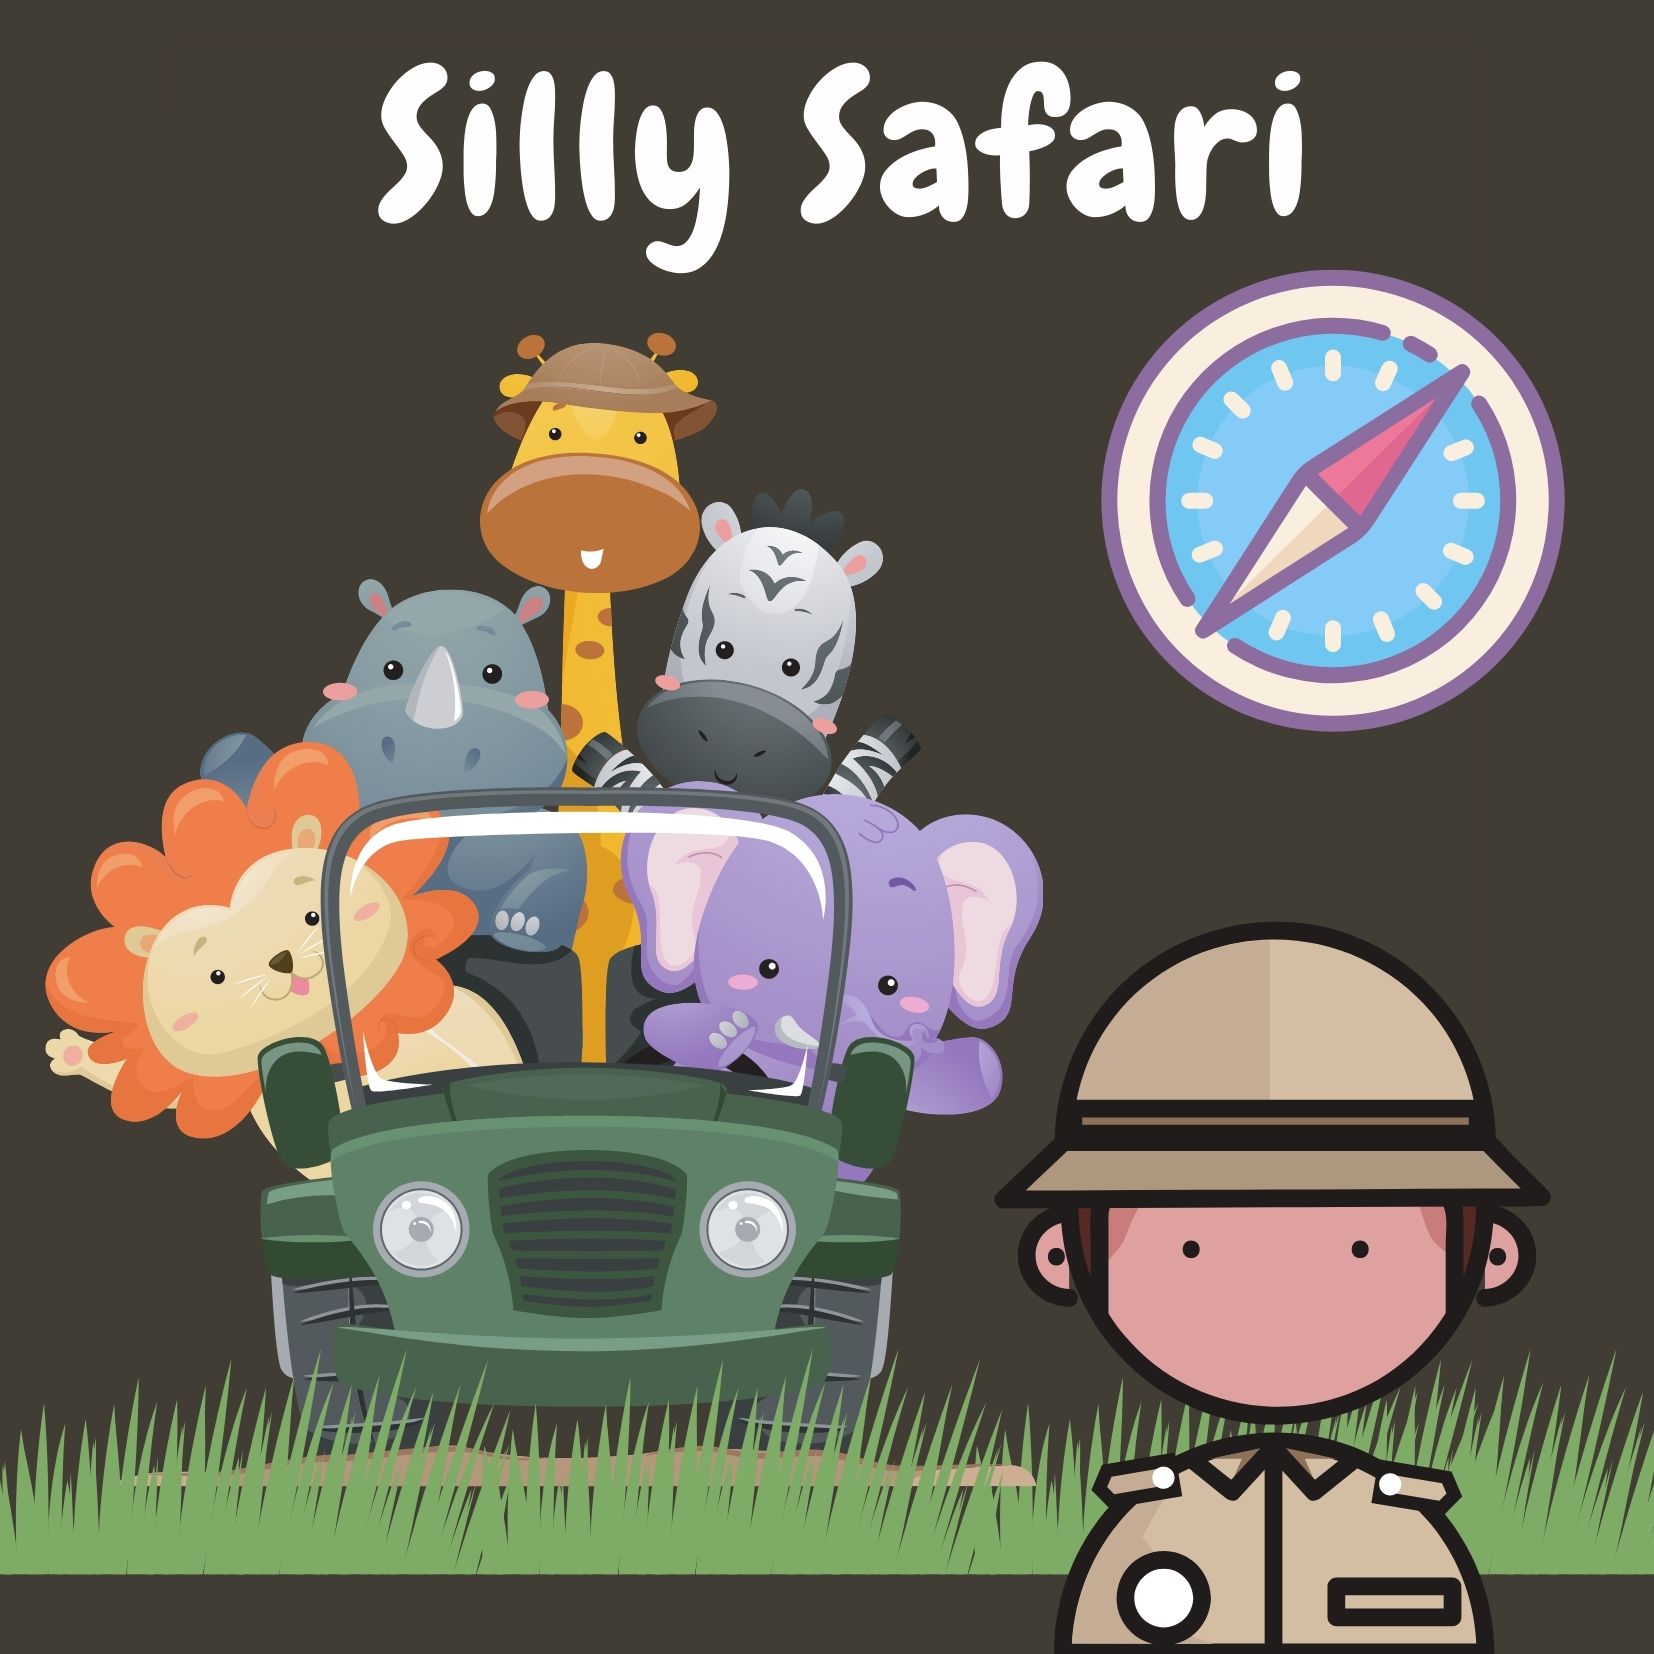 Silly safari